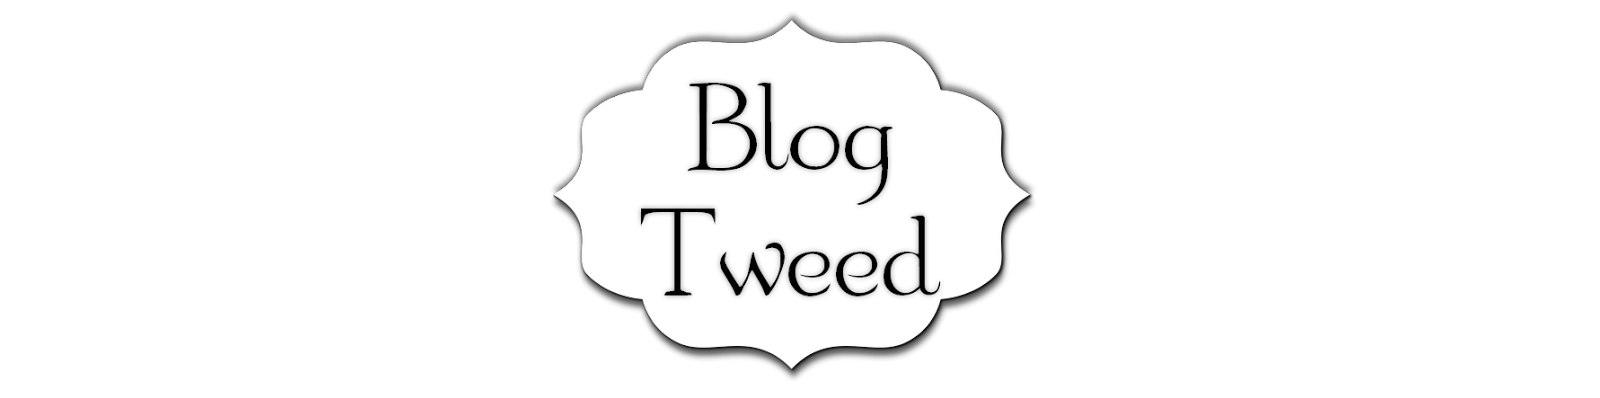 Blog Tweed